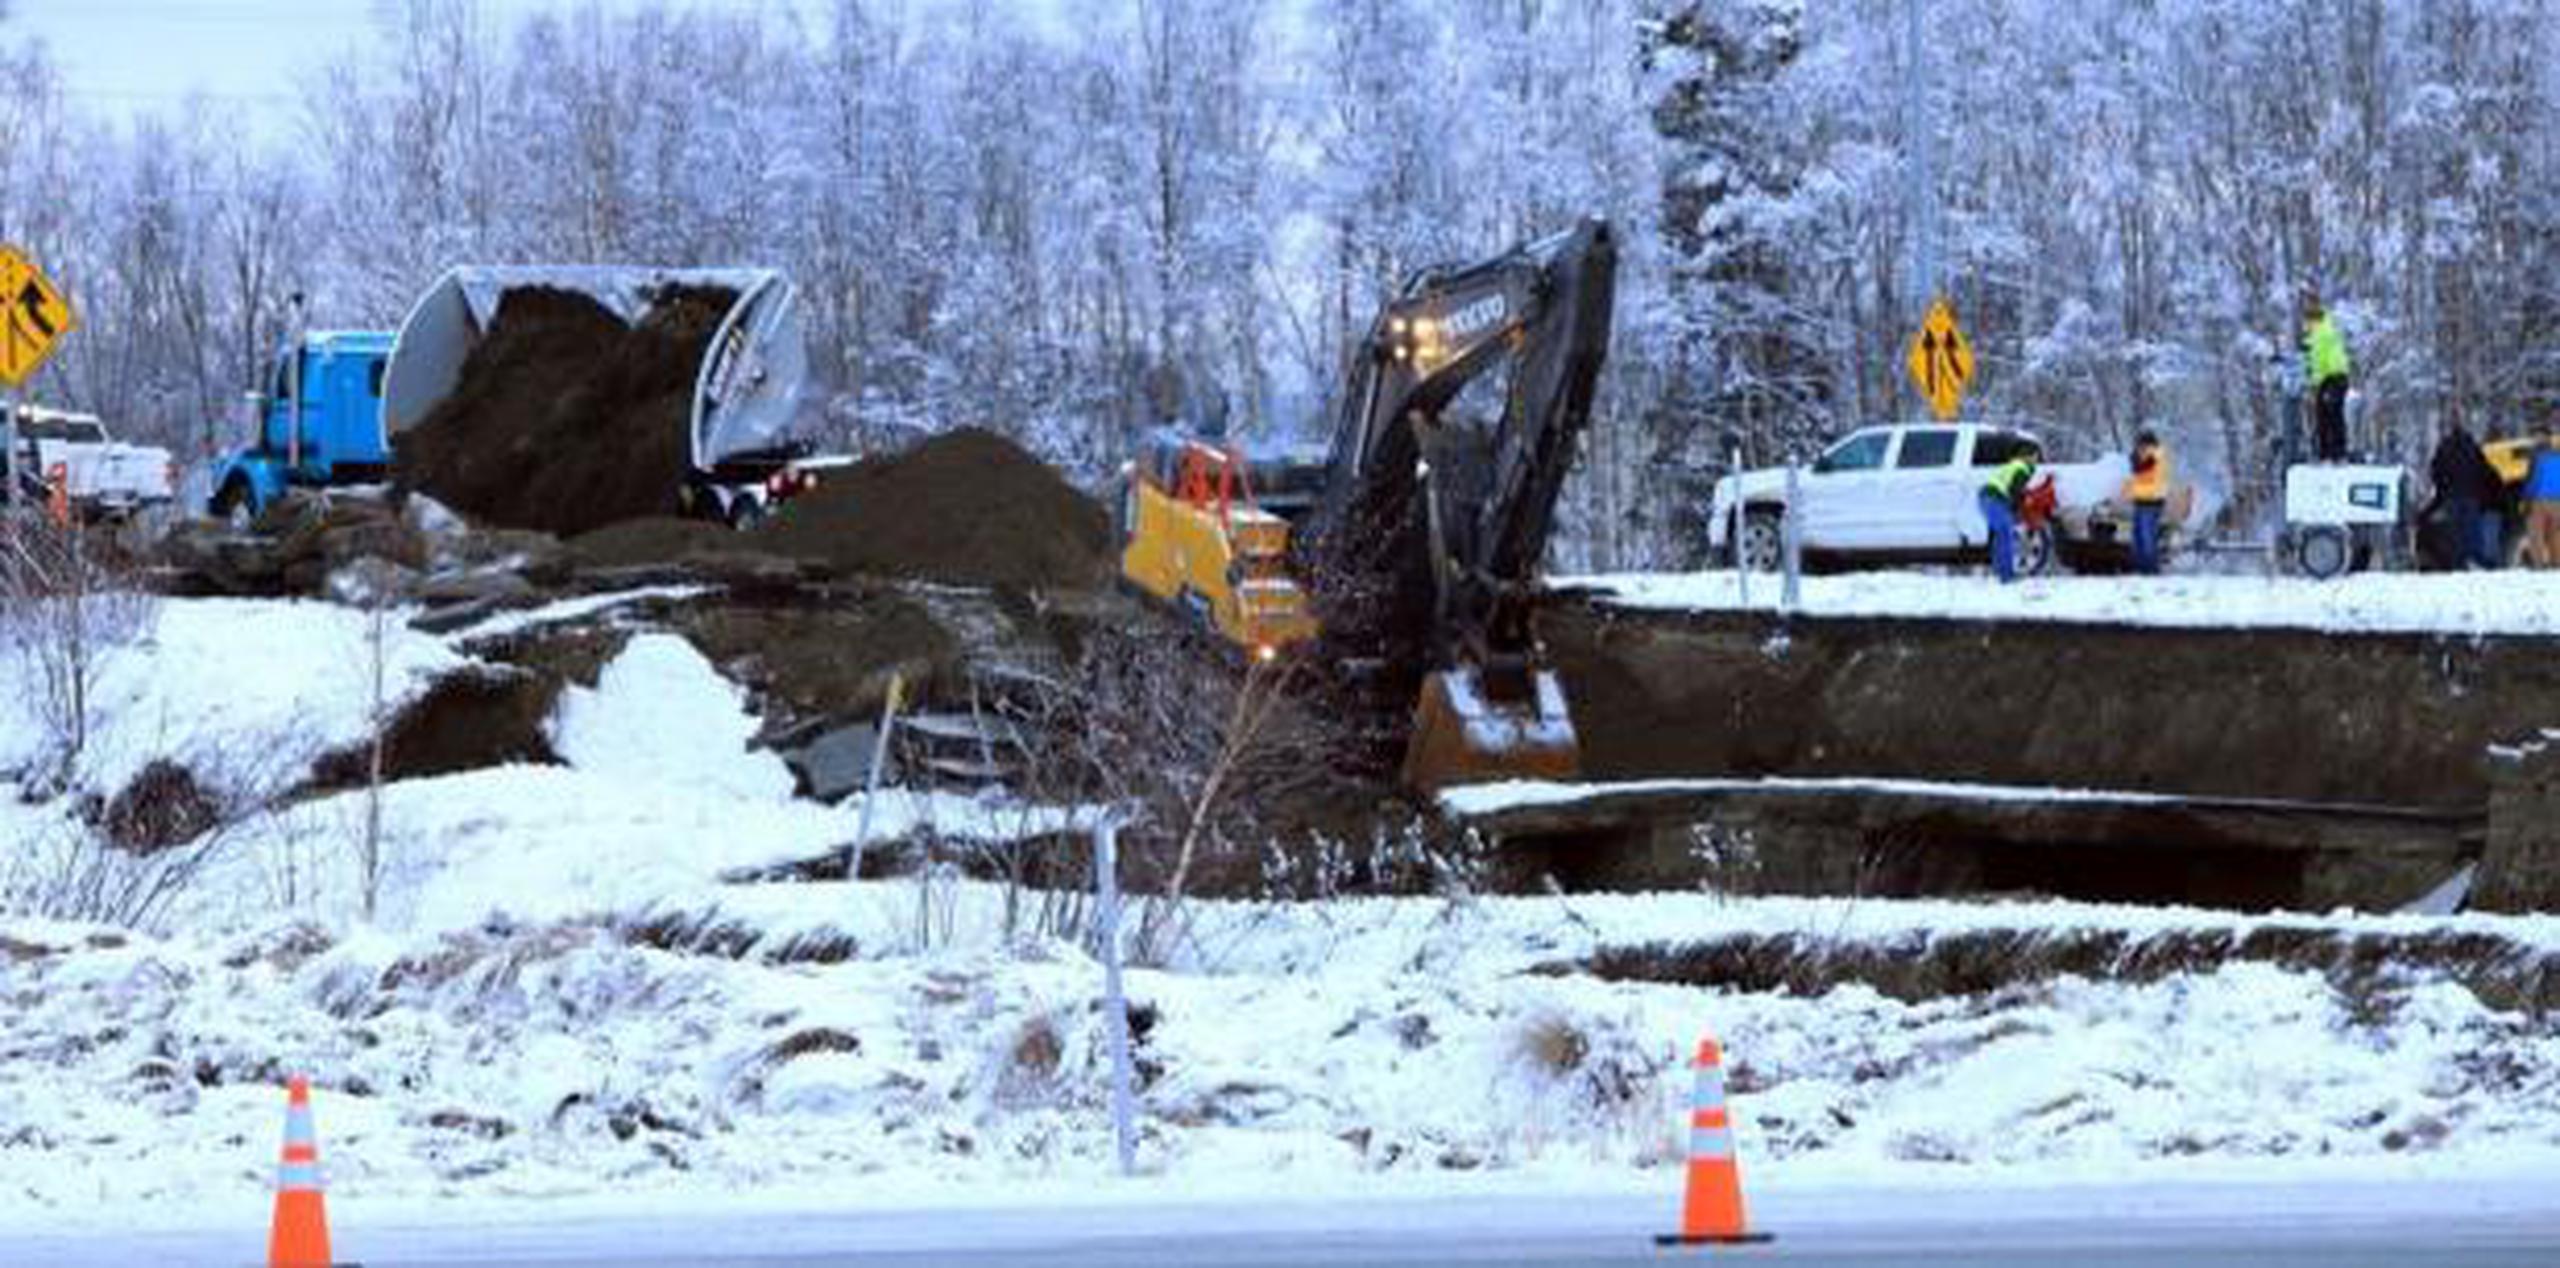 Los habitantes al norte de Anchorage recibieron permiso de ausentarse el lunes o trabajar desde casa, a fin de reducir el tráfico en la Carretera Glenn, y permitir las obras de reparación. (AP)